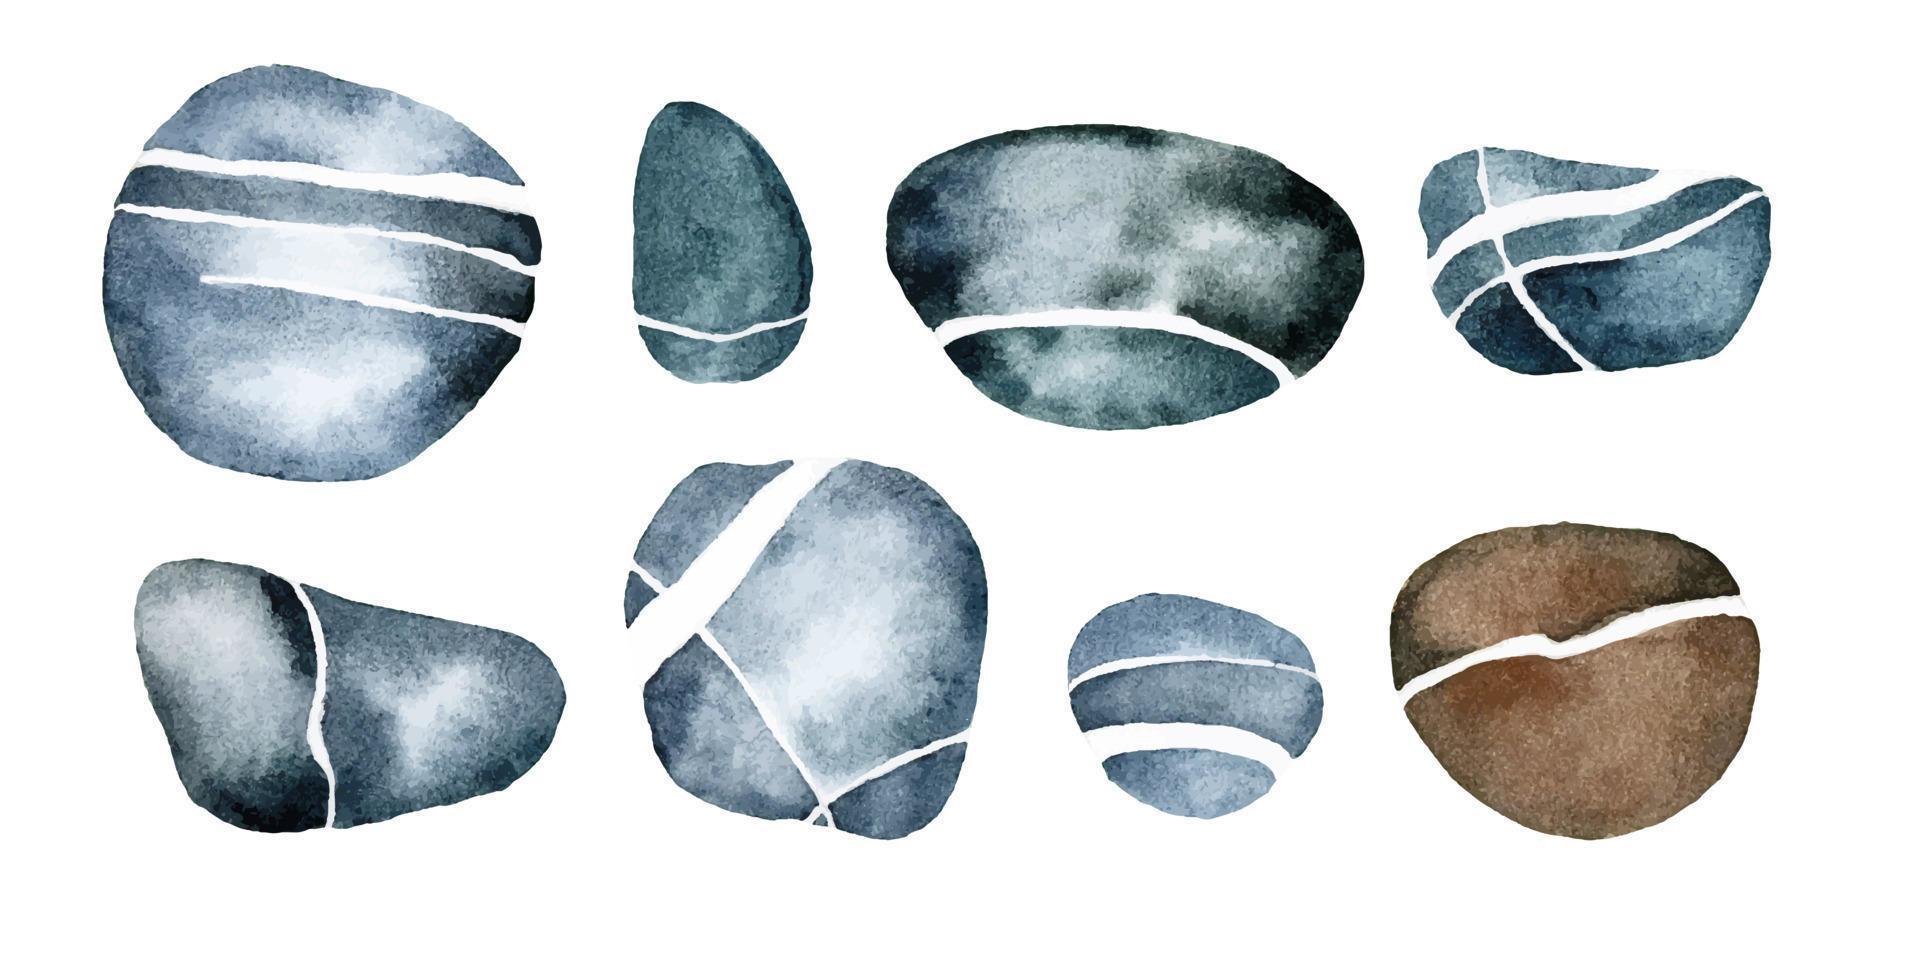 dibujo de acuarela. conjunto de piedras marinas de color gris azulado con vetas blancas, rayas. aislado en piedras de fondo blanco, guijarros de río vector